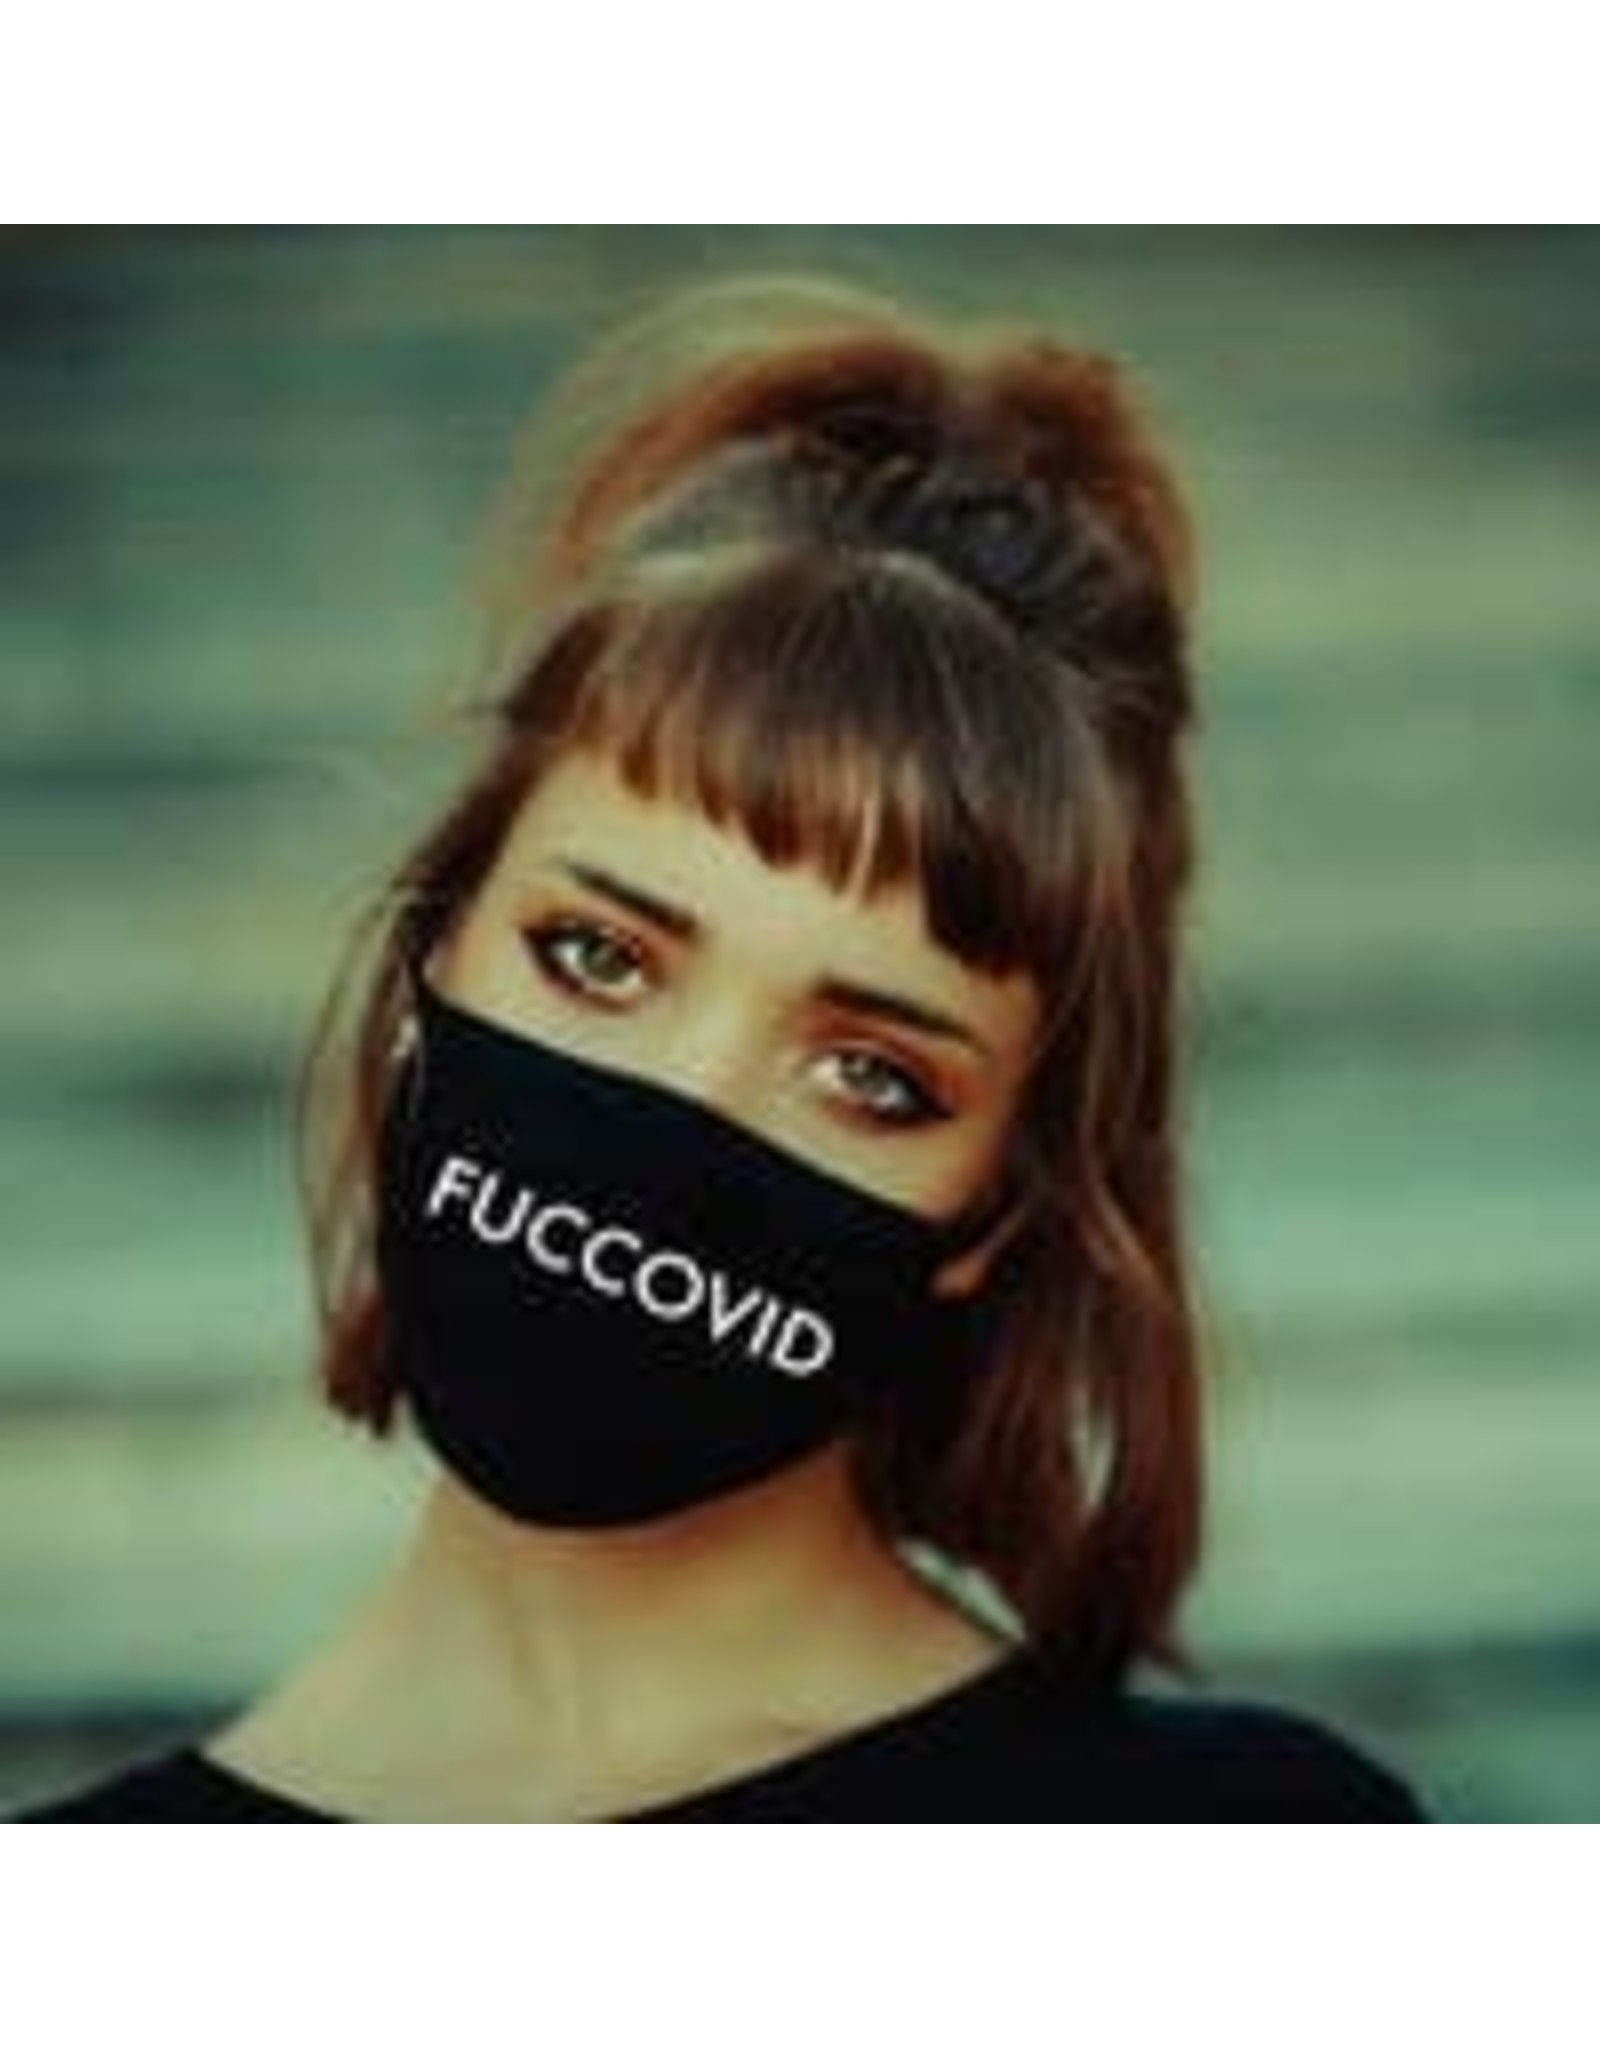 Fun Club Fuccovid Face Masks